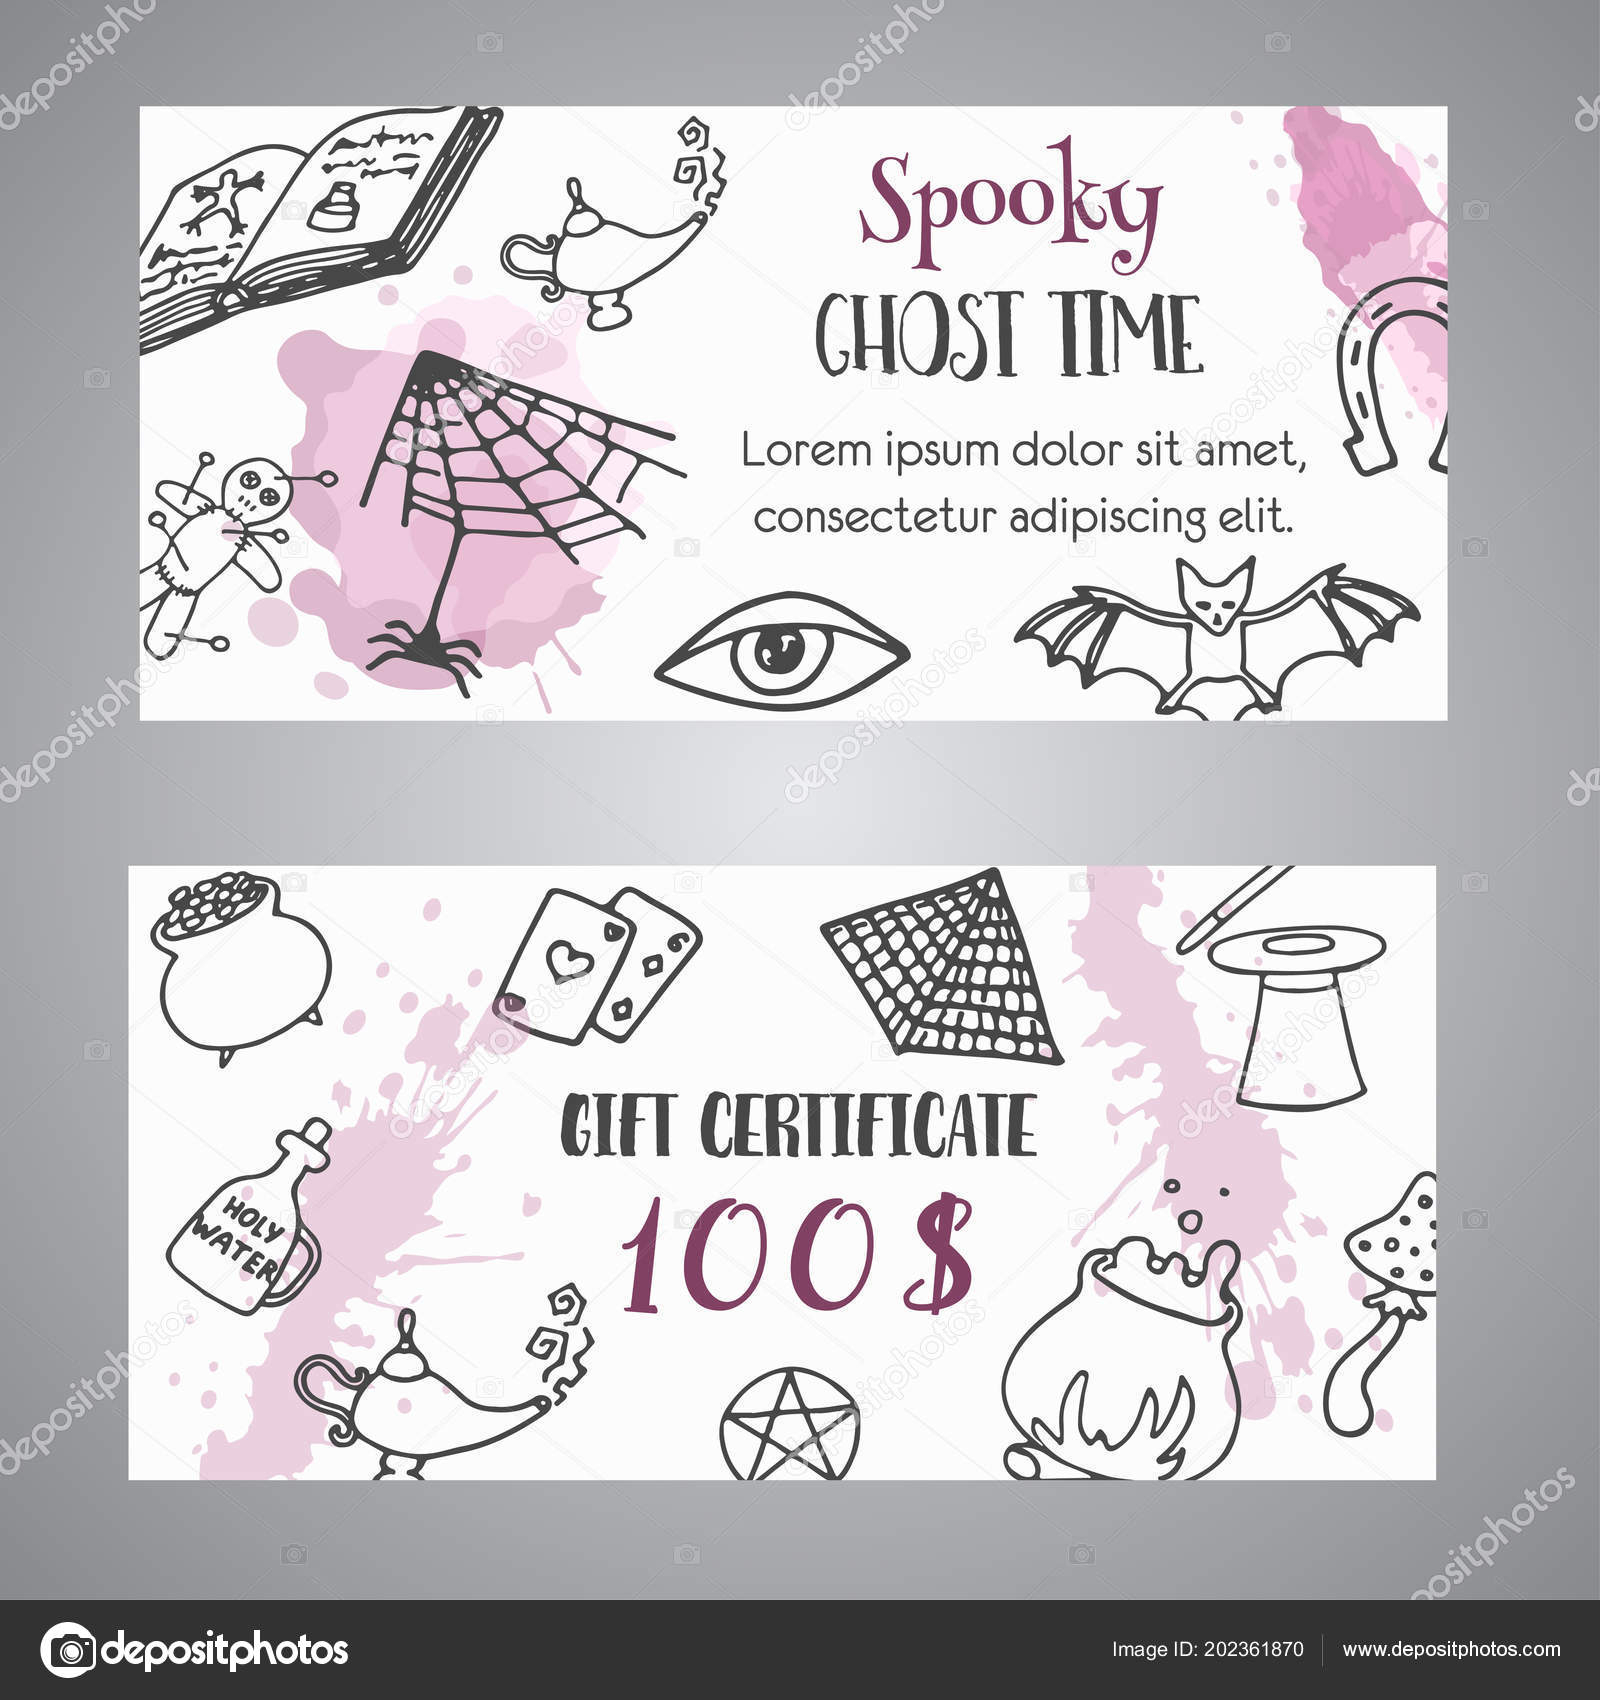 Hand Drawn Halloween Banner Free Voucher Template. Ghost Inside Halloween Certificate Template